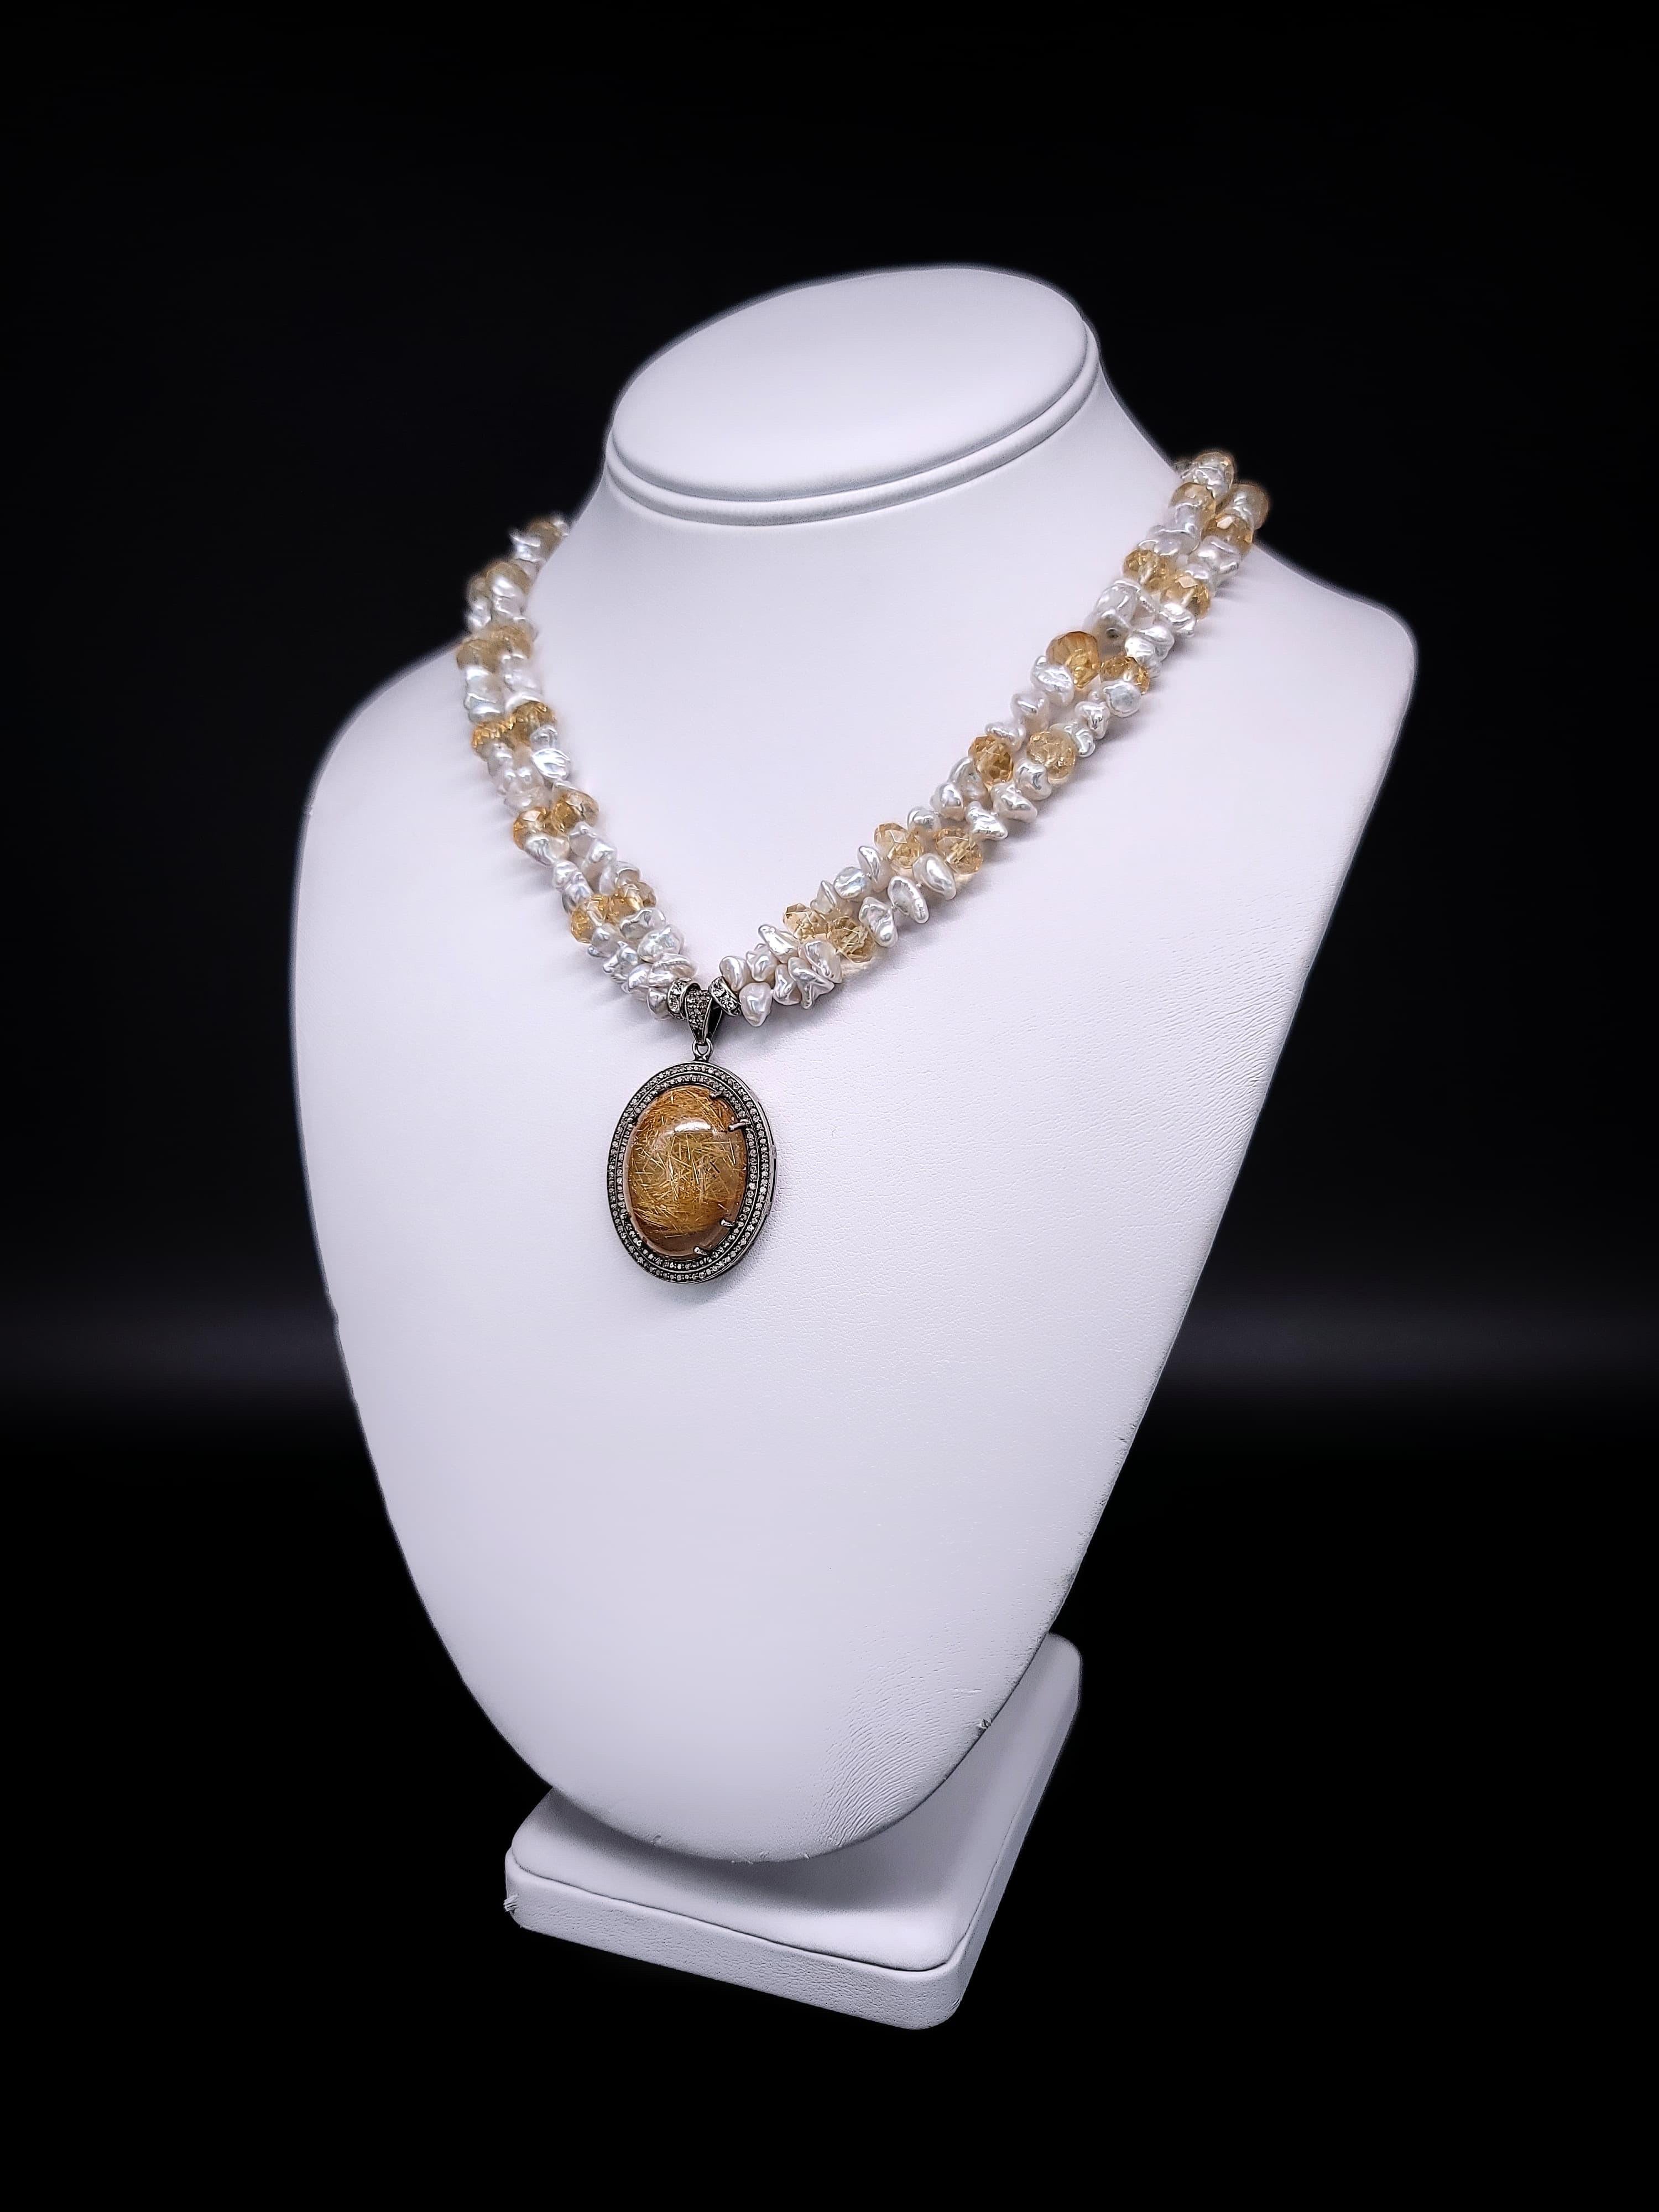 Diese einzigartige Halskette ist ein wahres Meisterwerk von Elaine Silverstein, das die natürliche Schönheit und Eleganz des Rutilquarzes zur Geltung bringt. Das Herzstück der Halskette ist ein großer, kuppelförmiger Rutilquarz, der perfekt von